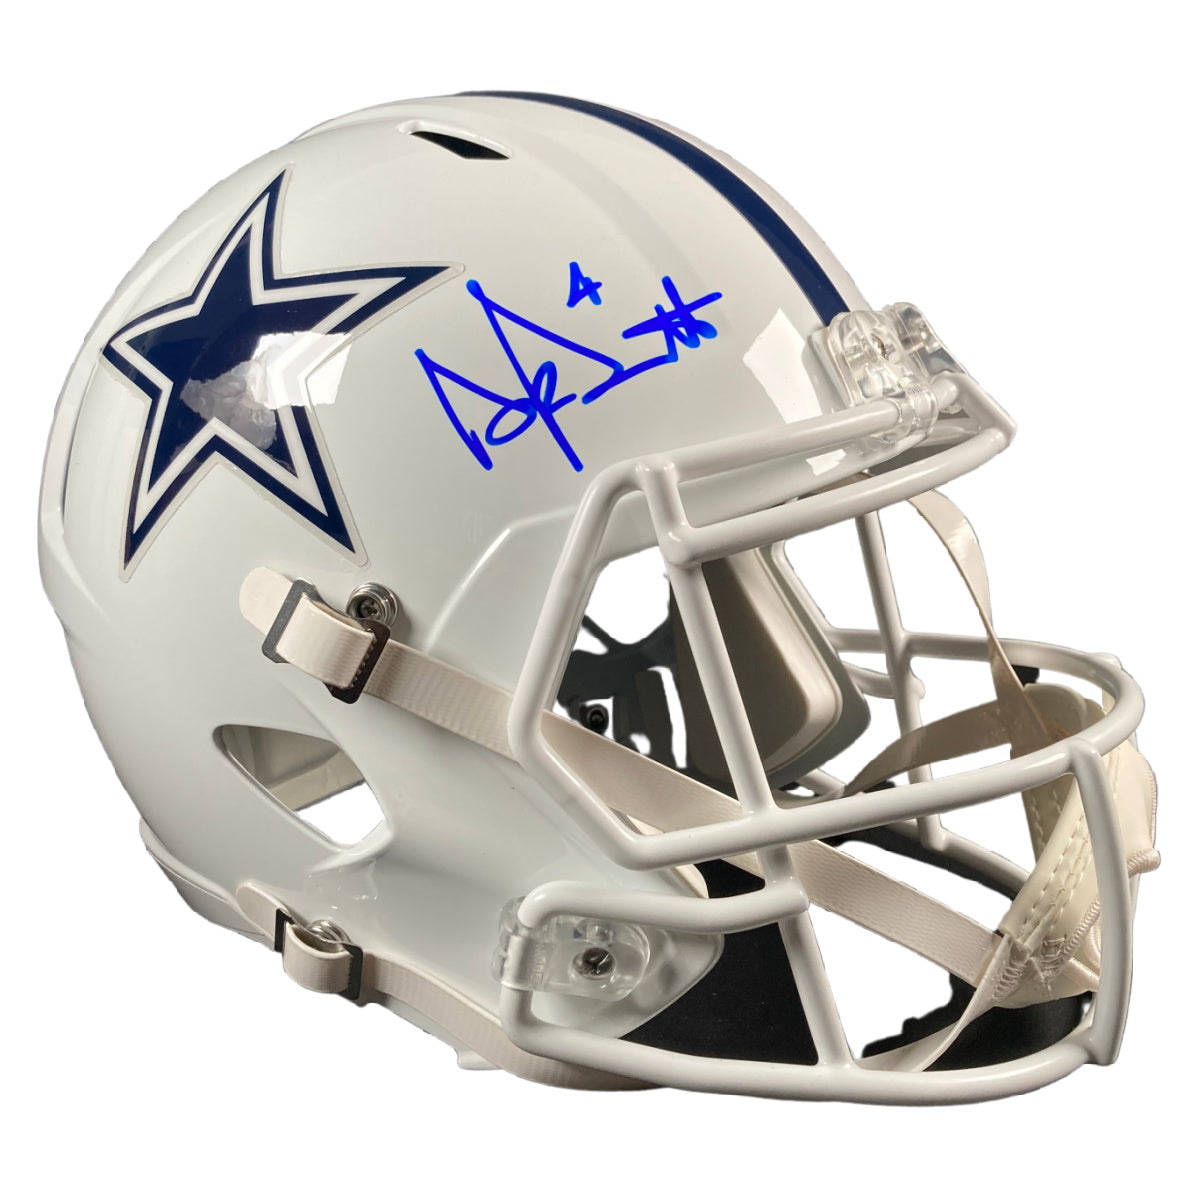 Dak Prescott Signed Dallas Cowboys FS ALT Helmet Autographed BAS COA